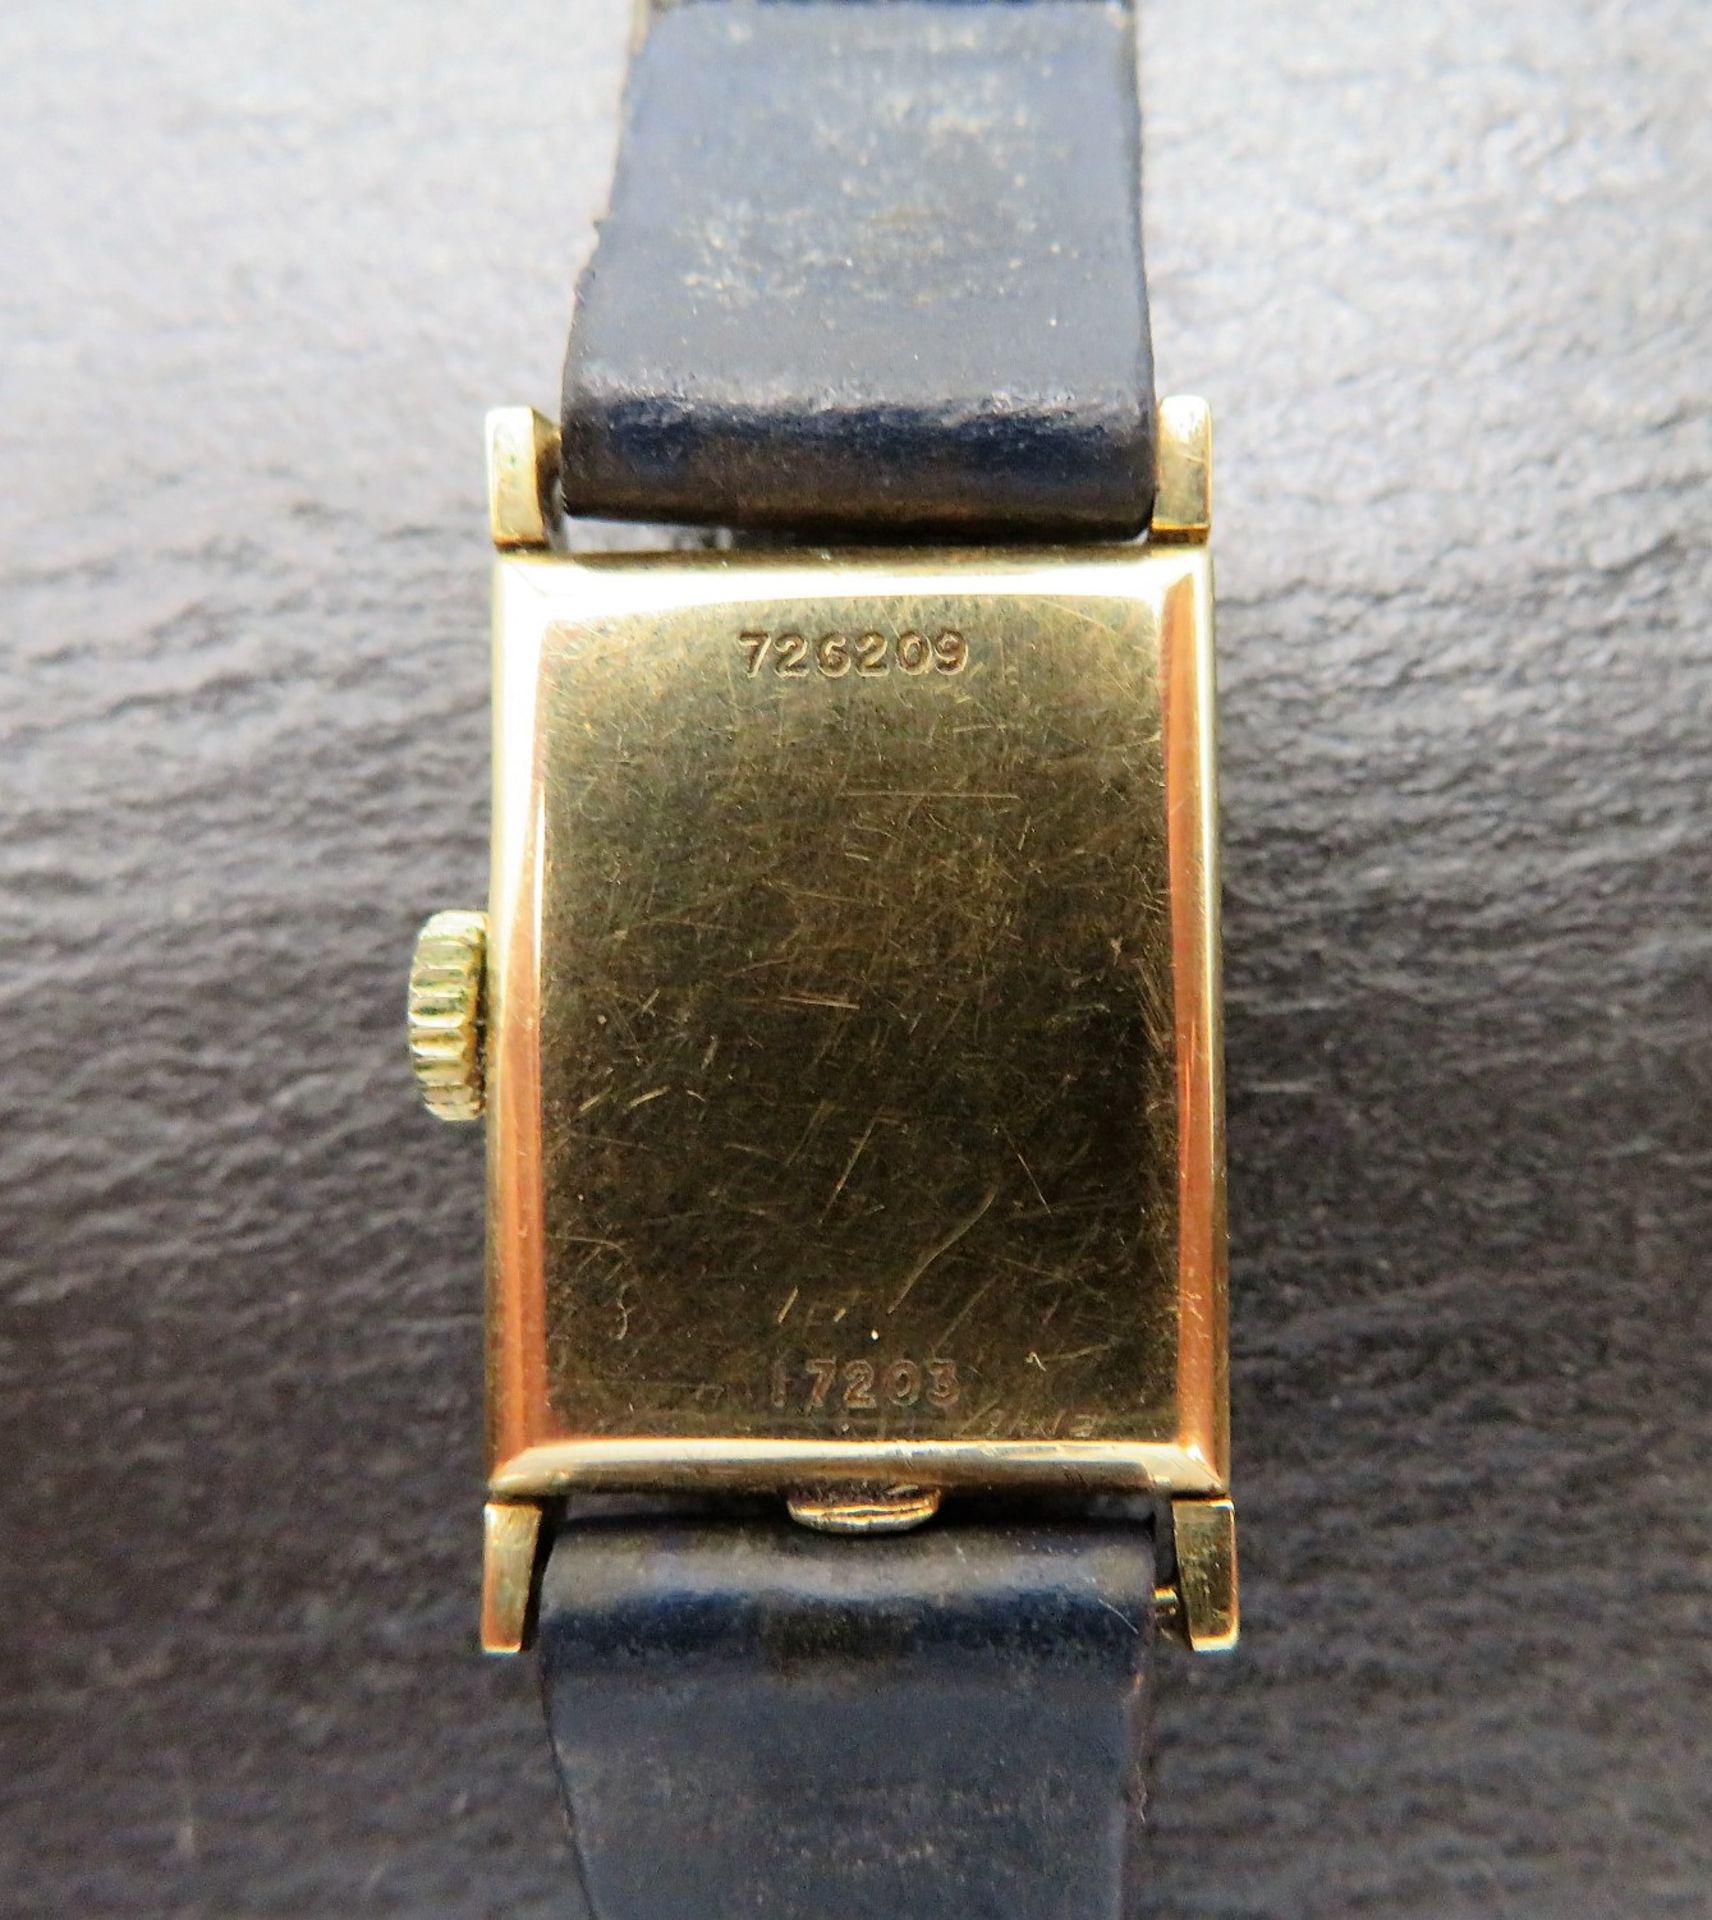 DAU, Universal Genève, 1920/30er Jahre, Gehäuse 585er Gelbgold, gepunzt, brutto 12,2 g, Kronenaufzu - Image 2 of 2